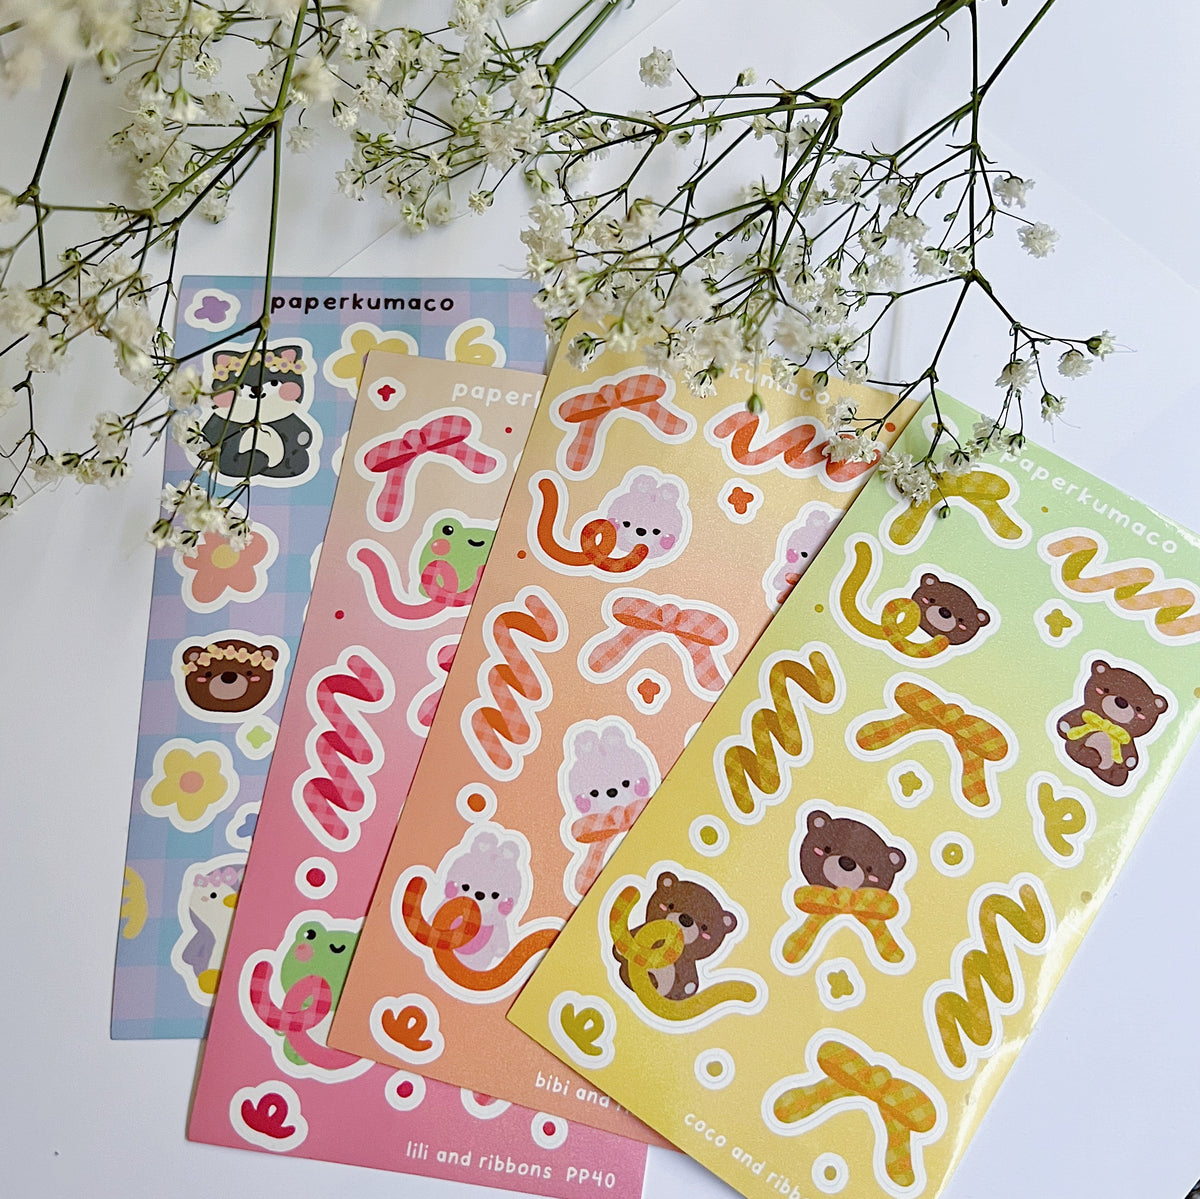 Flower Power Shimmer Sticker Sheet